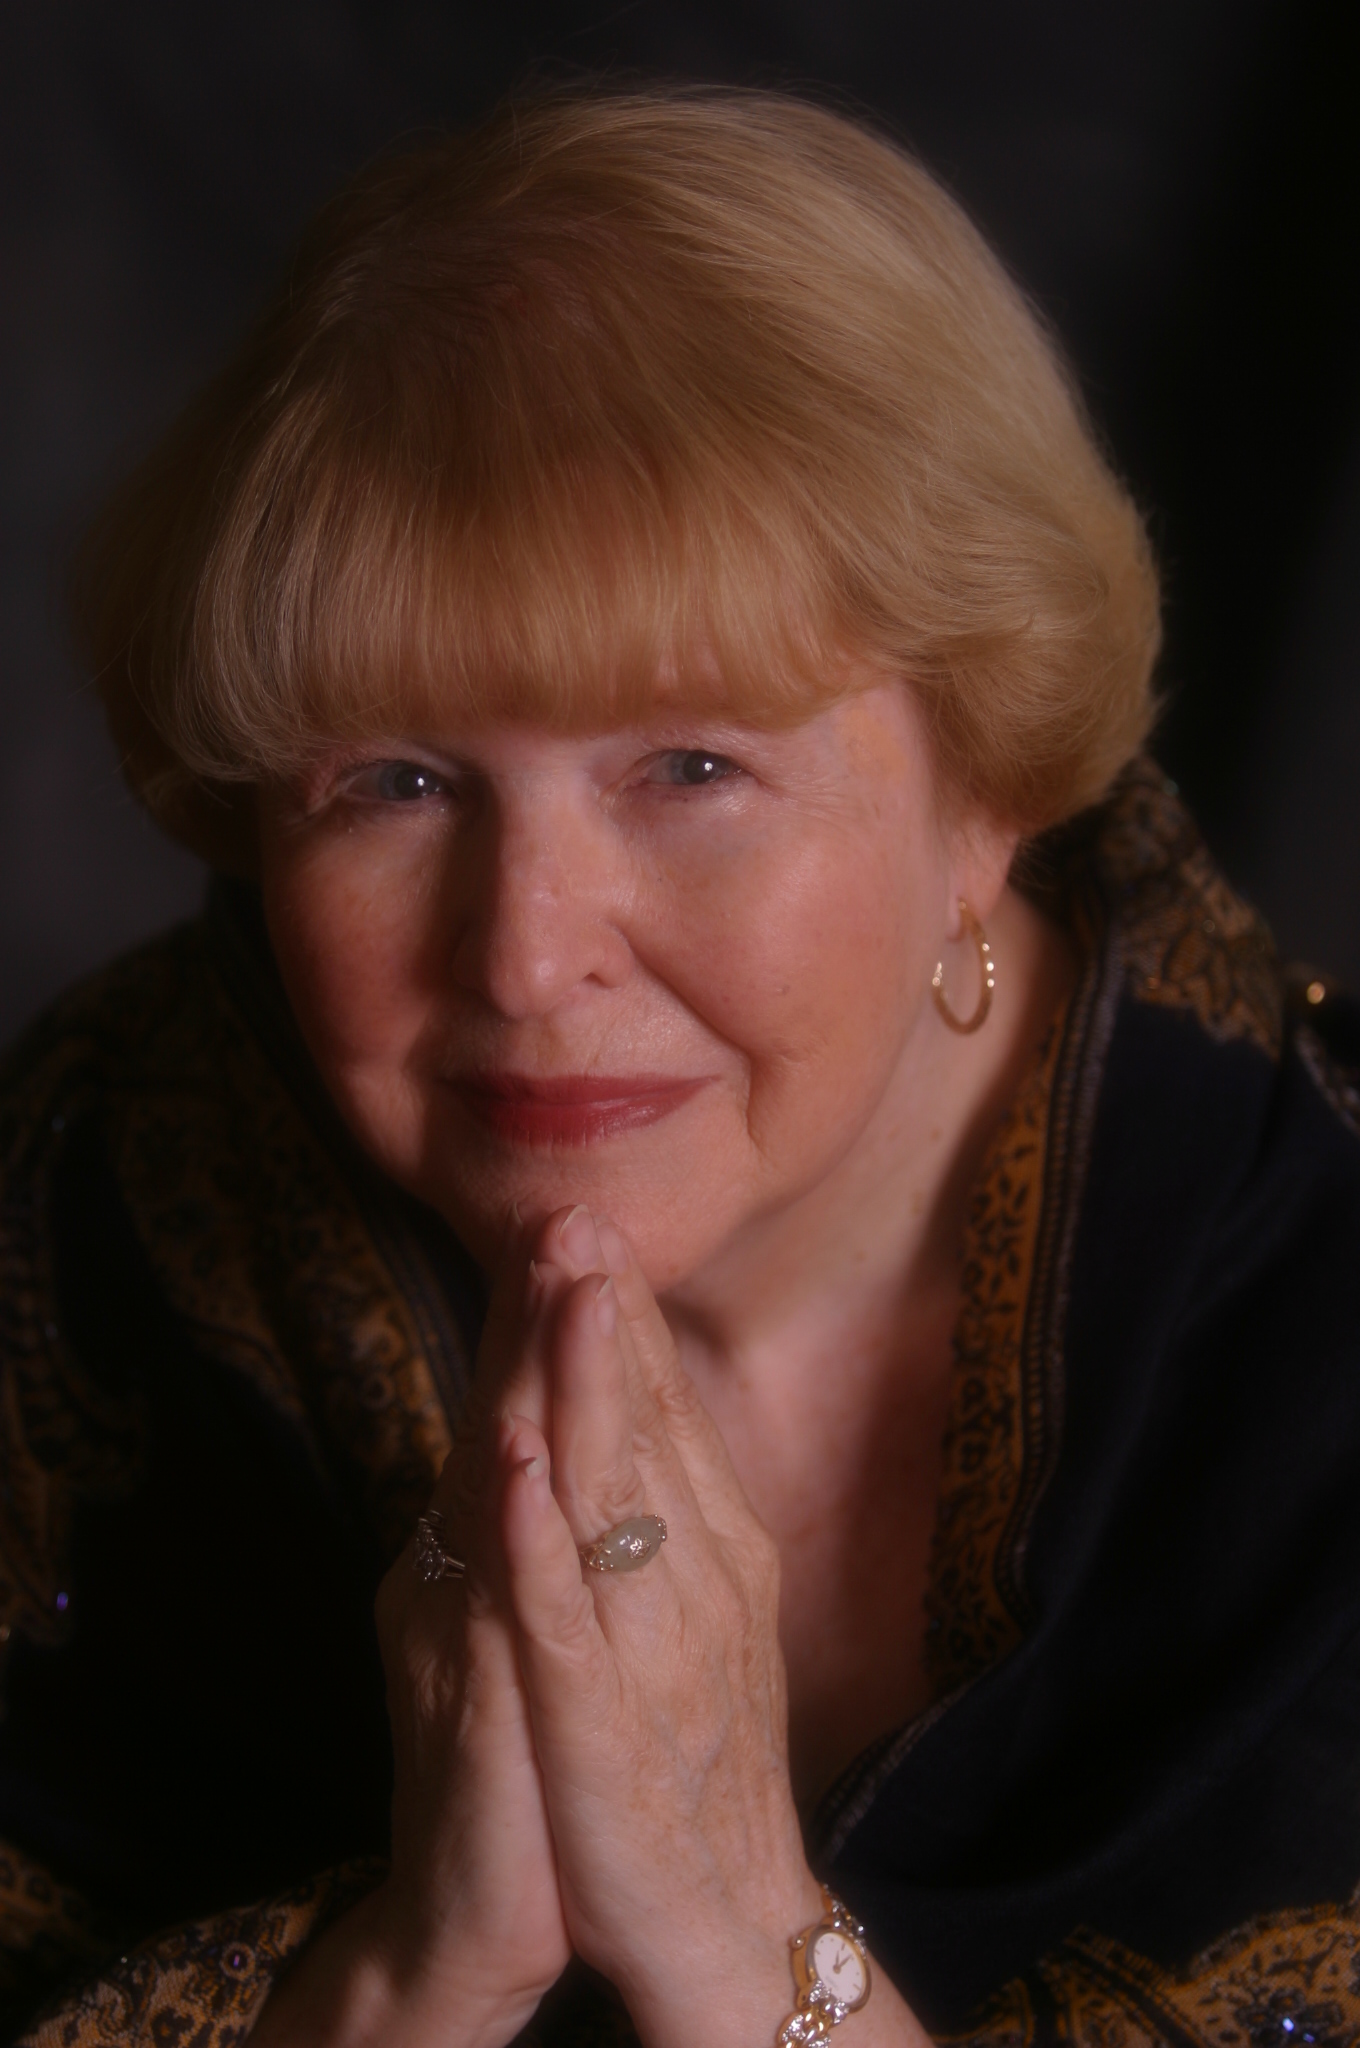 Larson Publications photo of author Melinda J. Rising